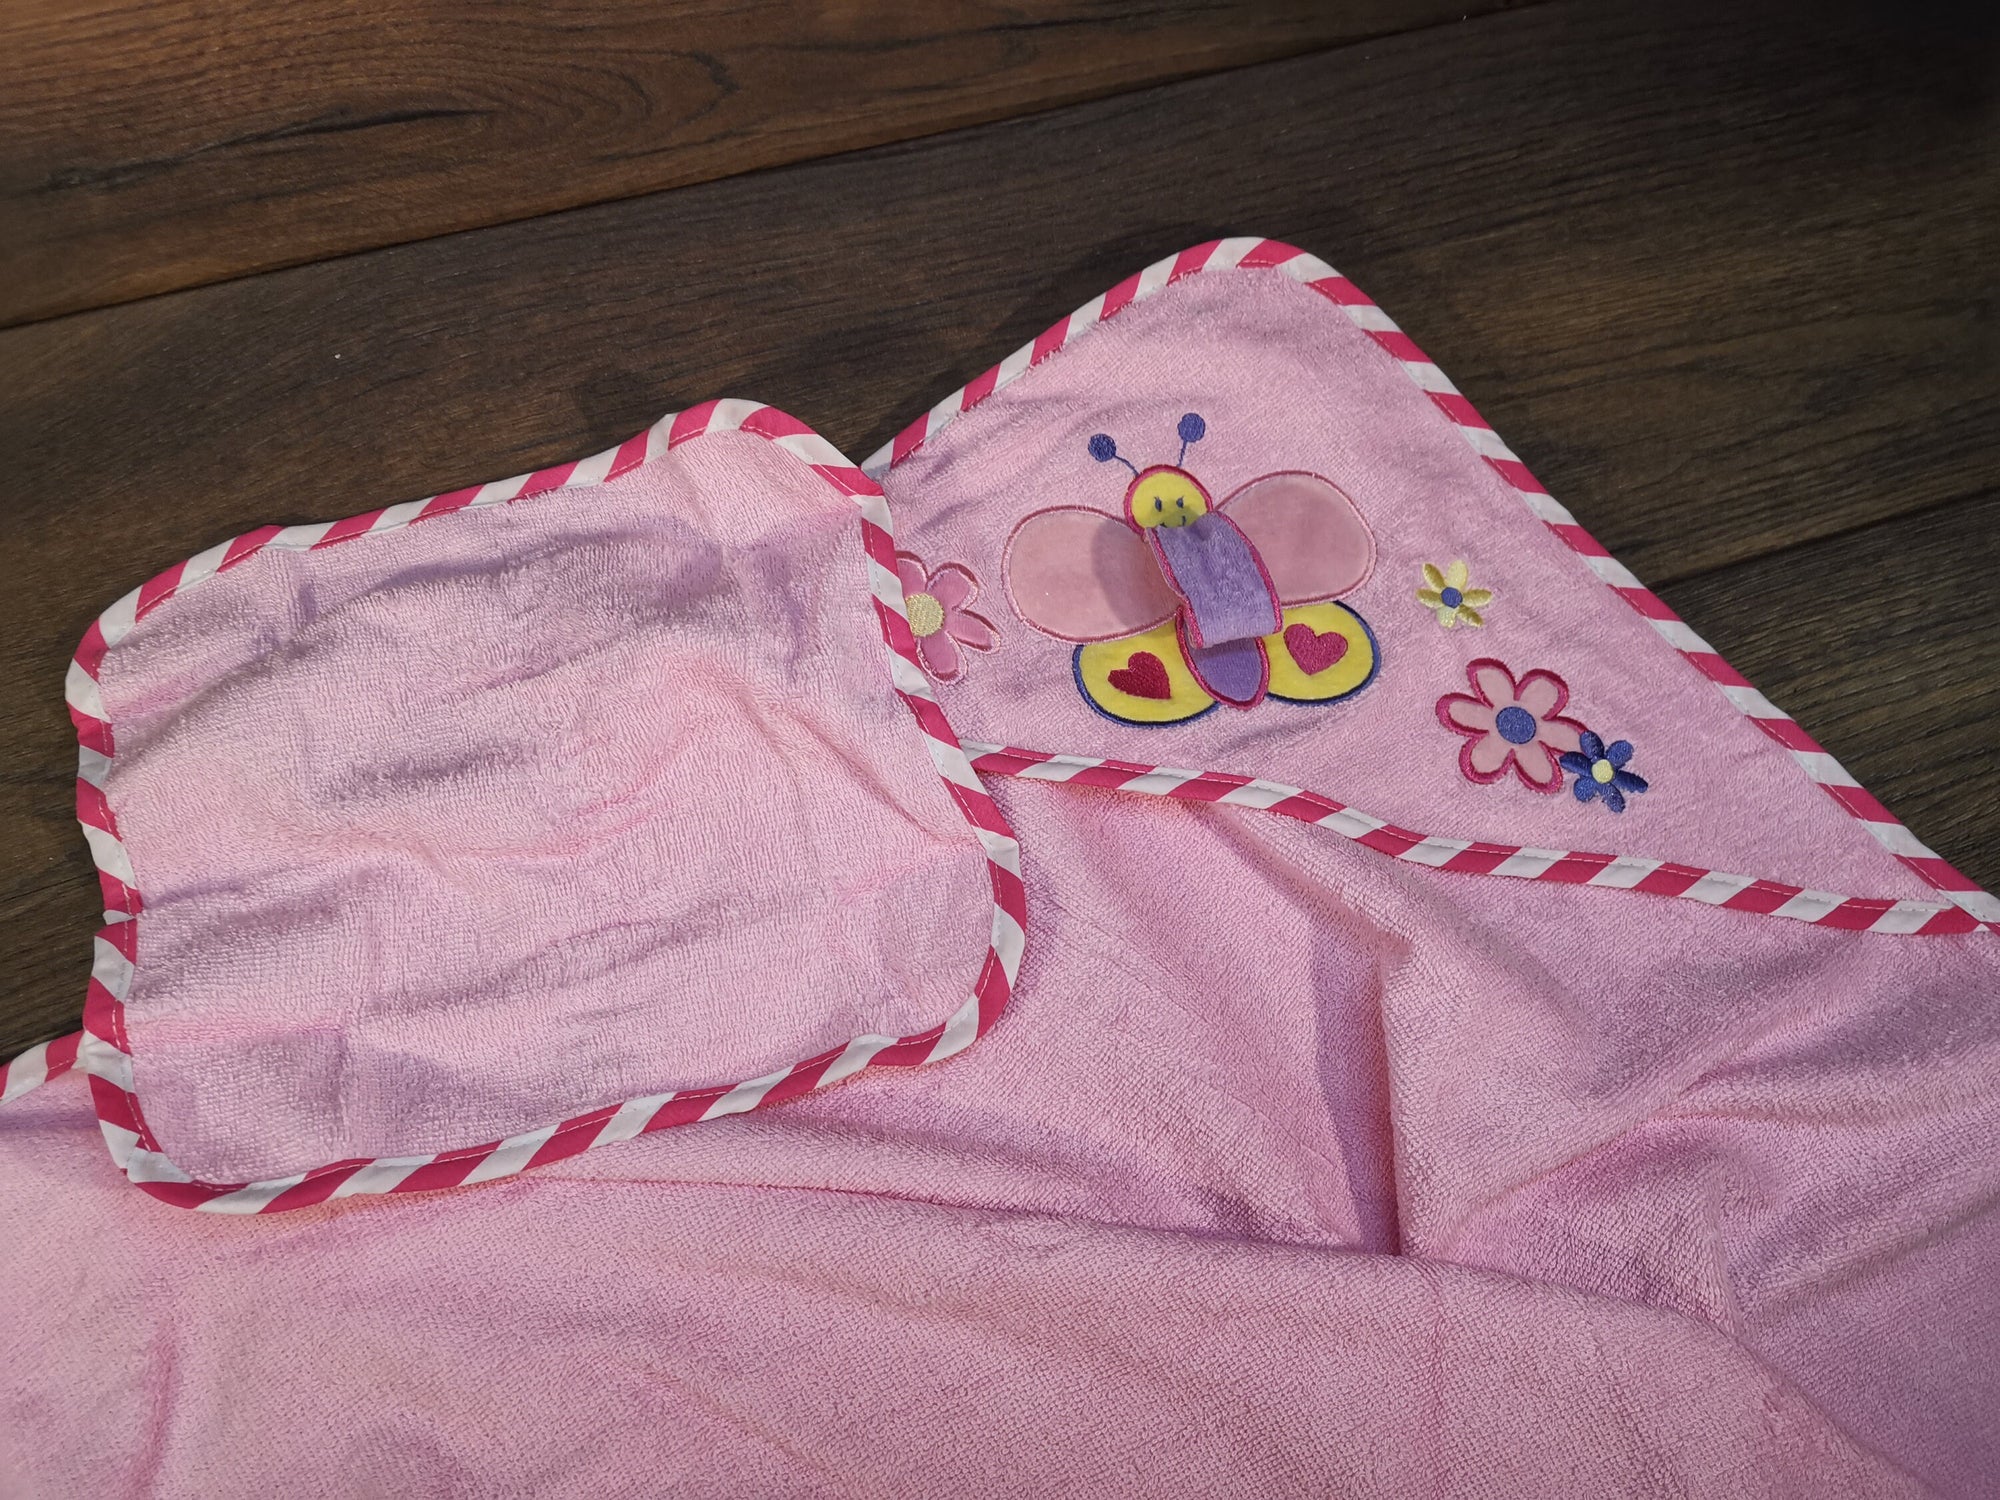 Babyhandtuch mit Namen und Kapuze, Handtuch mit Namen bestickt, Handtuch für Kinder mit Namen